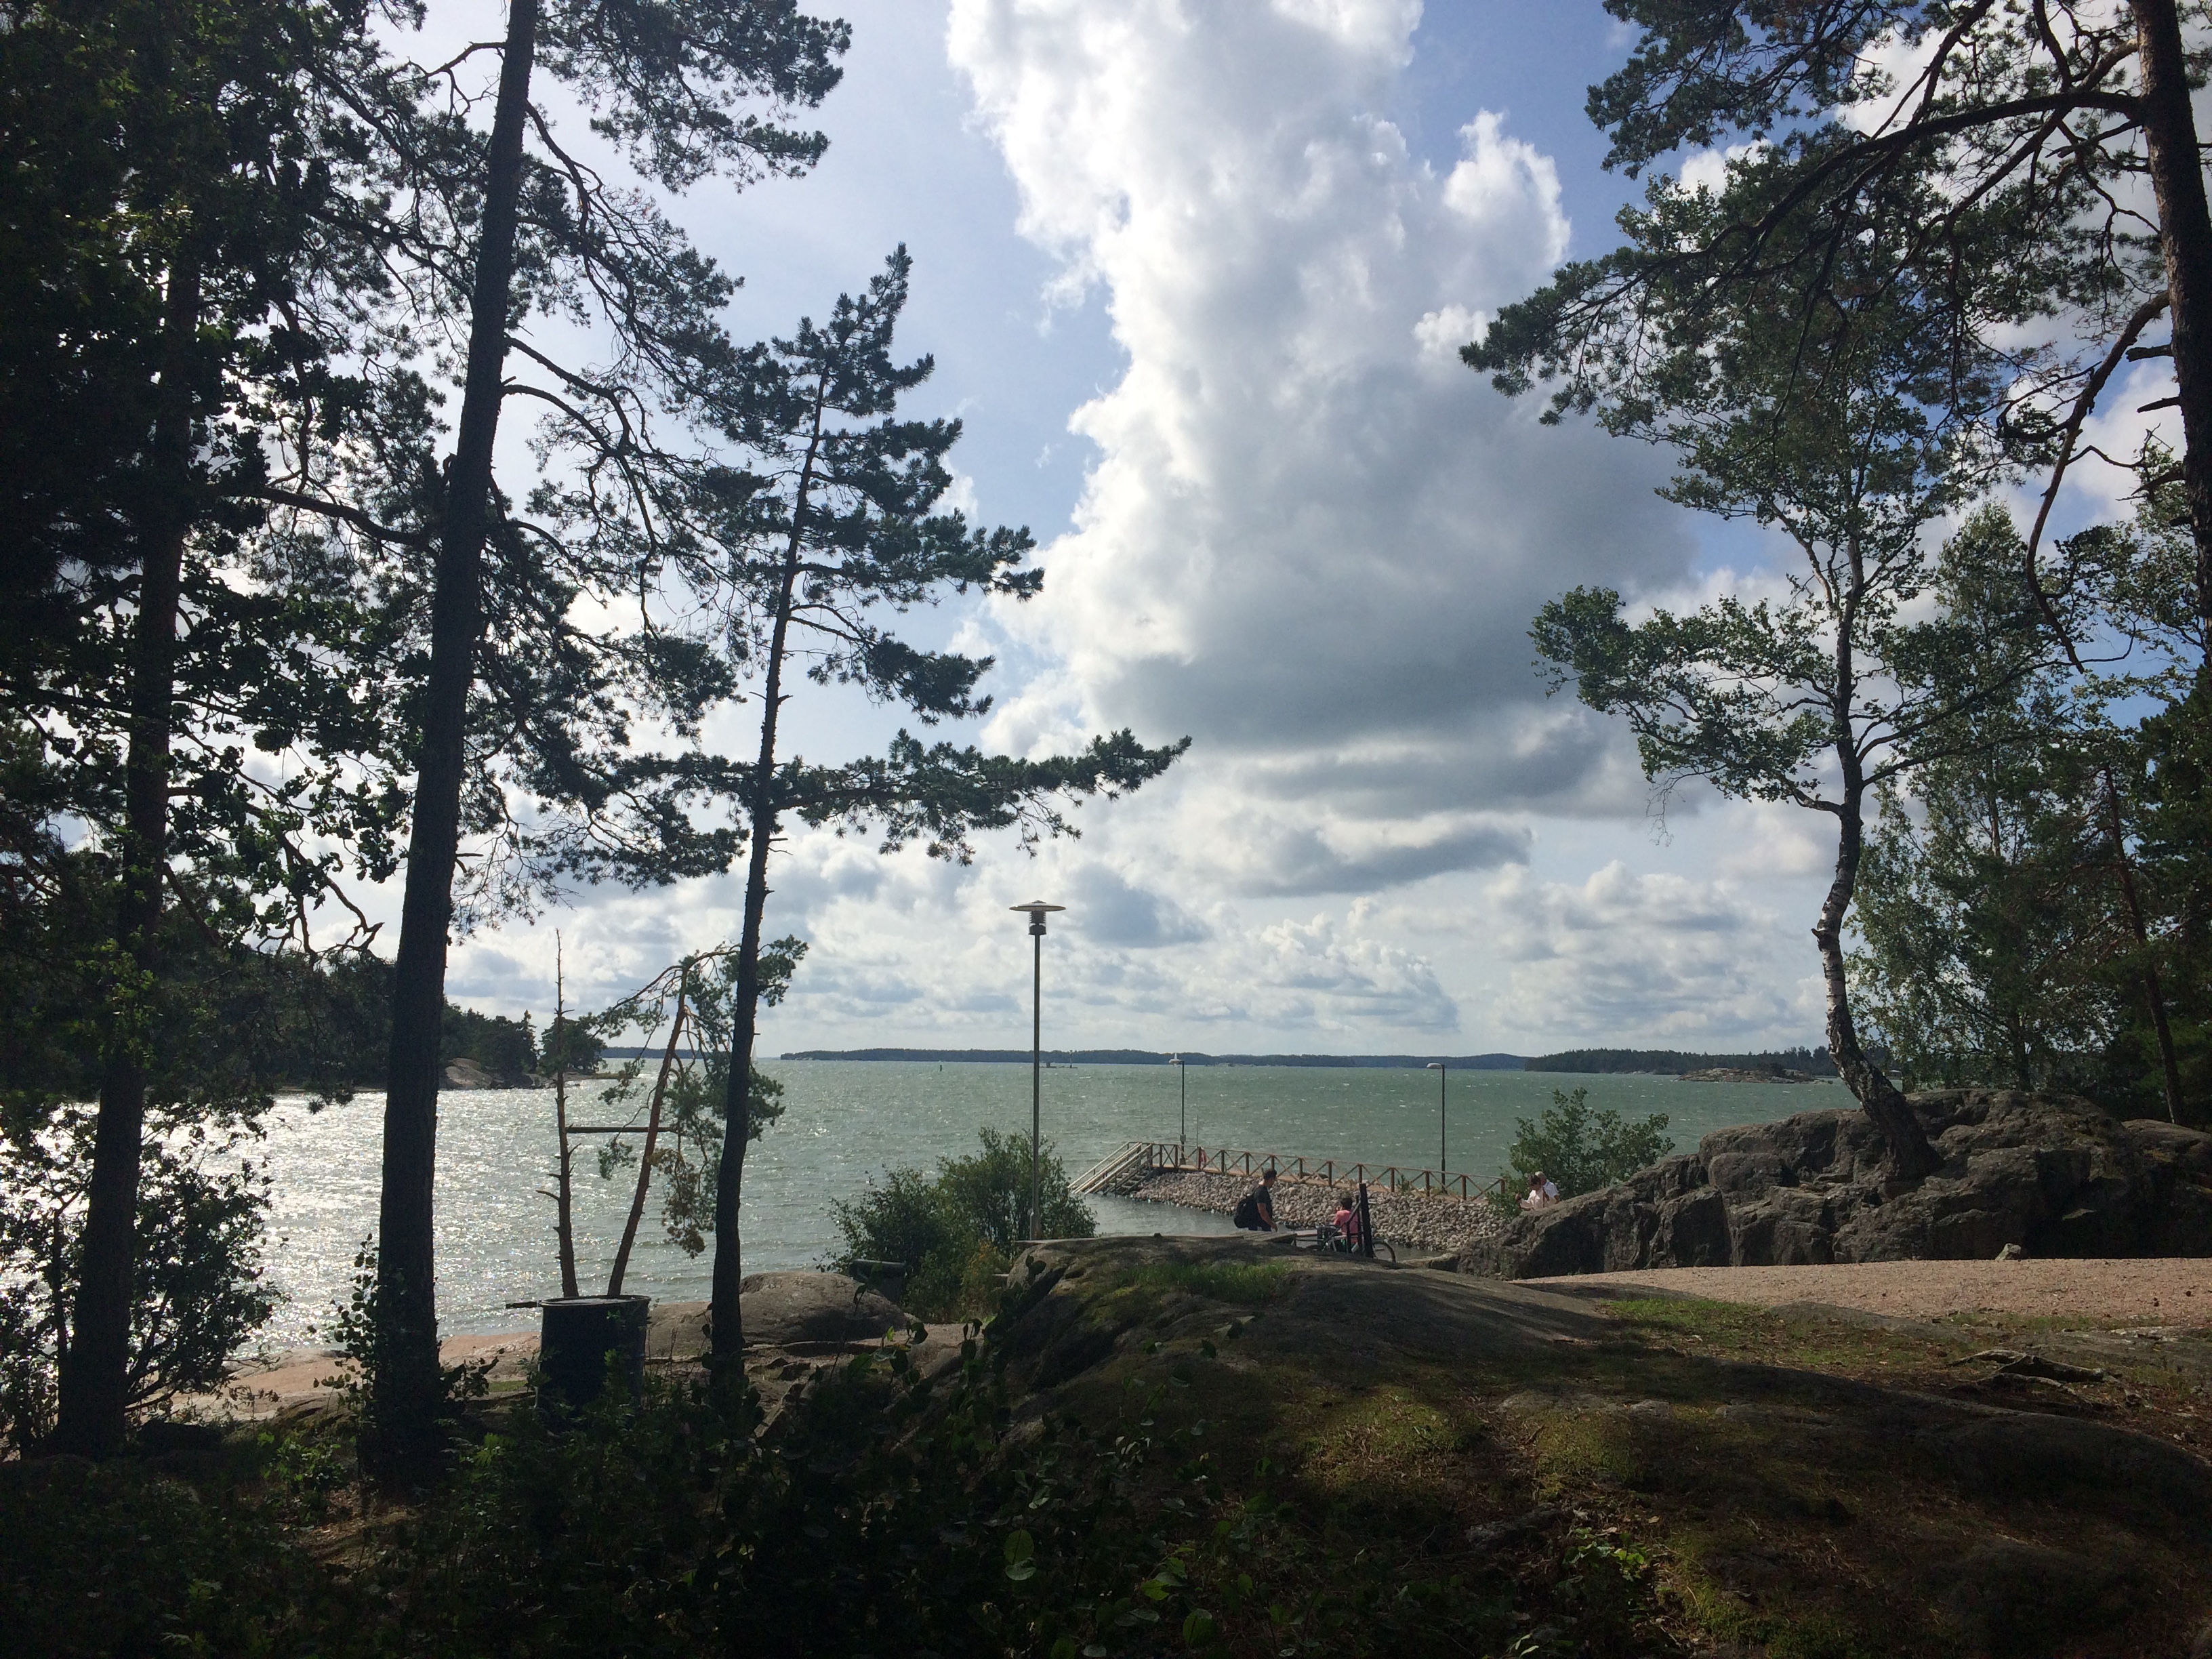 Saaronniemen kärki Turun Ruissalossa on luonnoskaunis tammilehtoineen ja kesäisin suosittuine uimarantoineen.